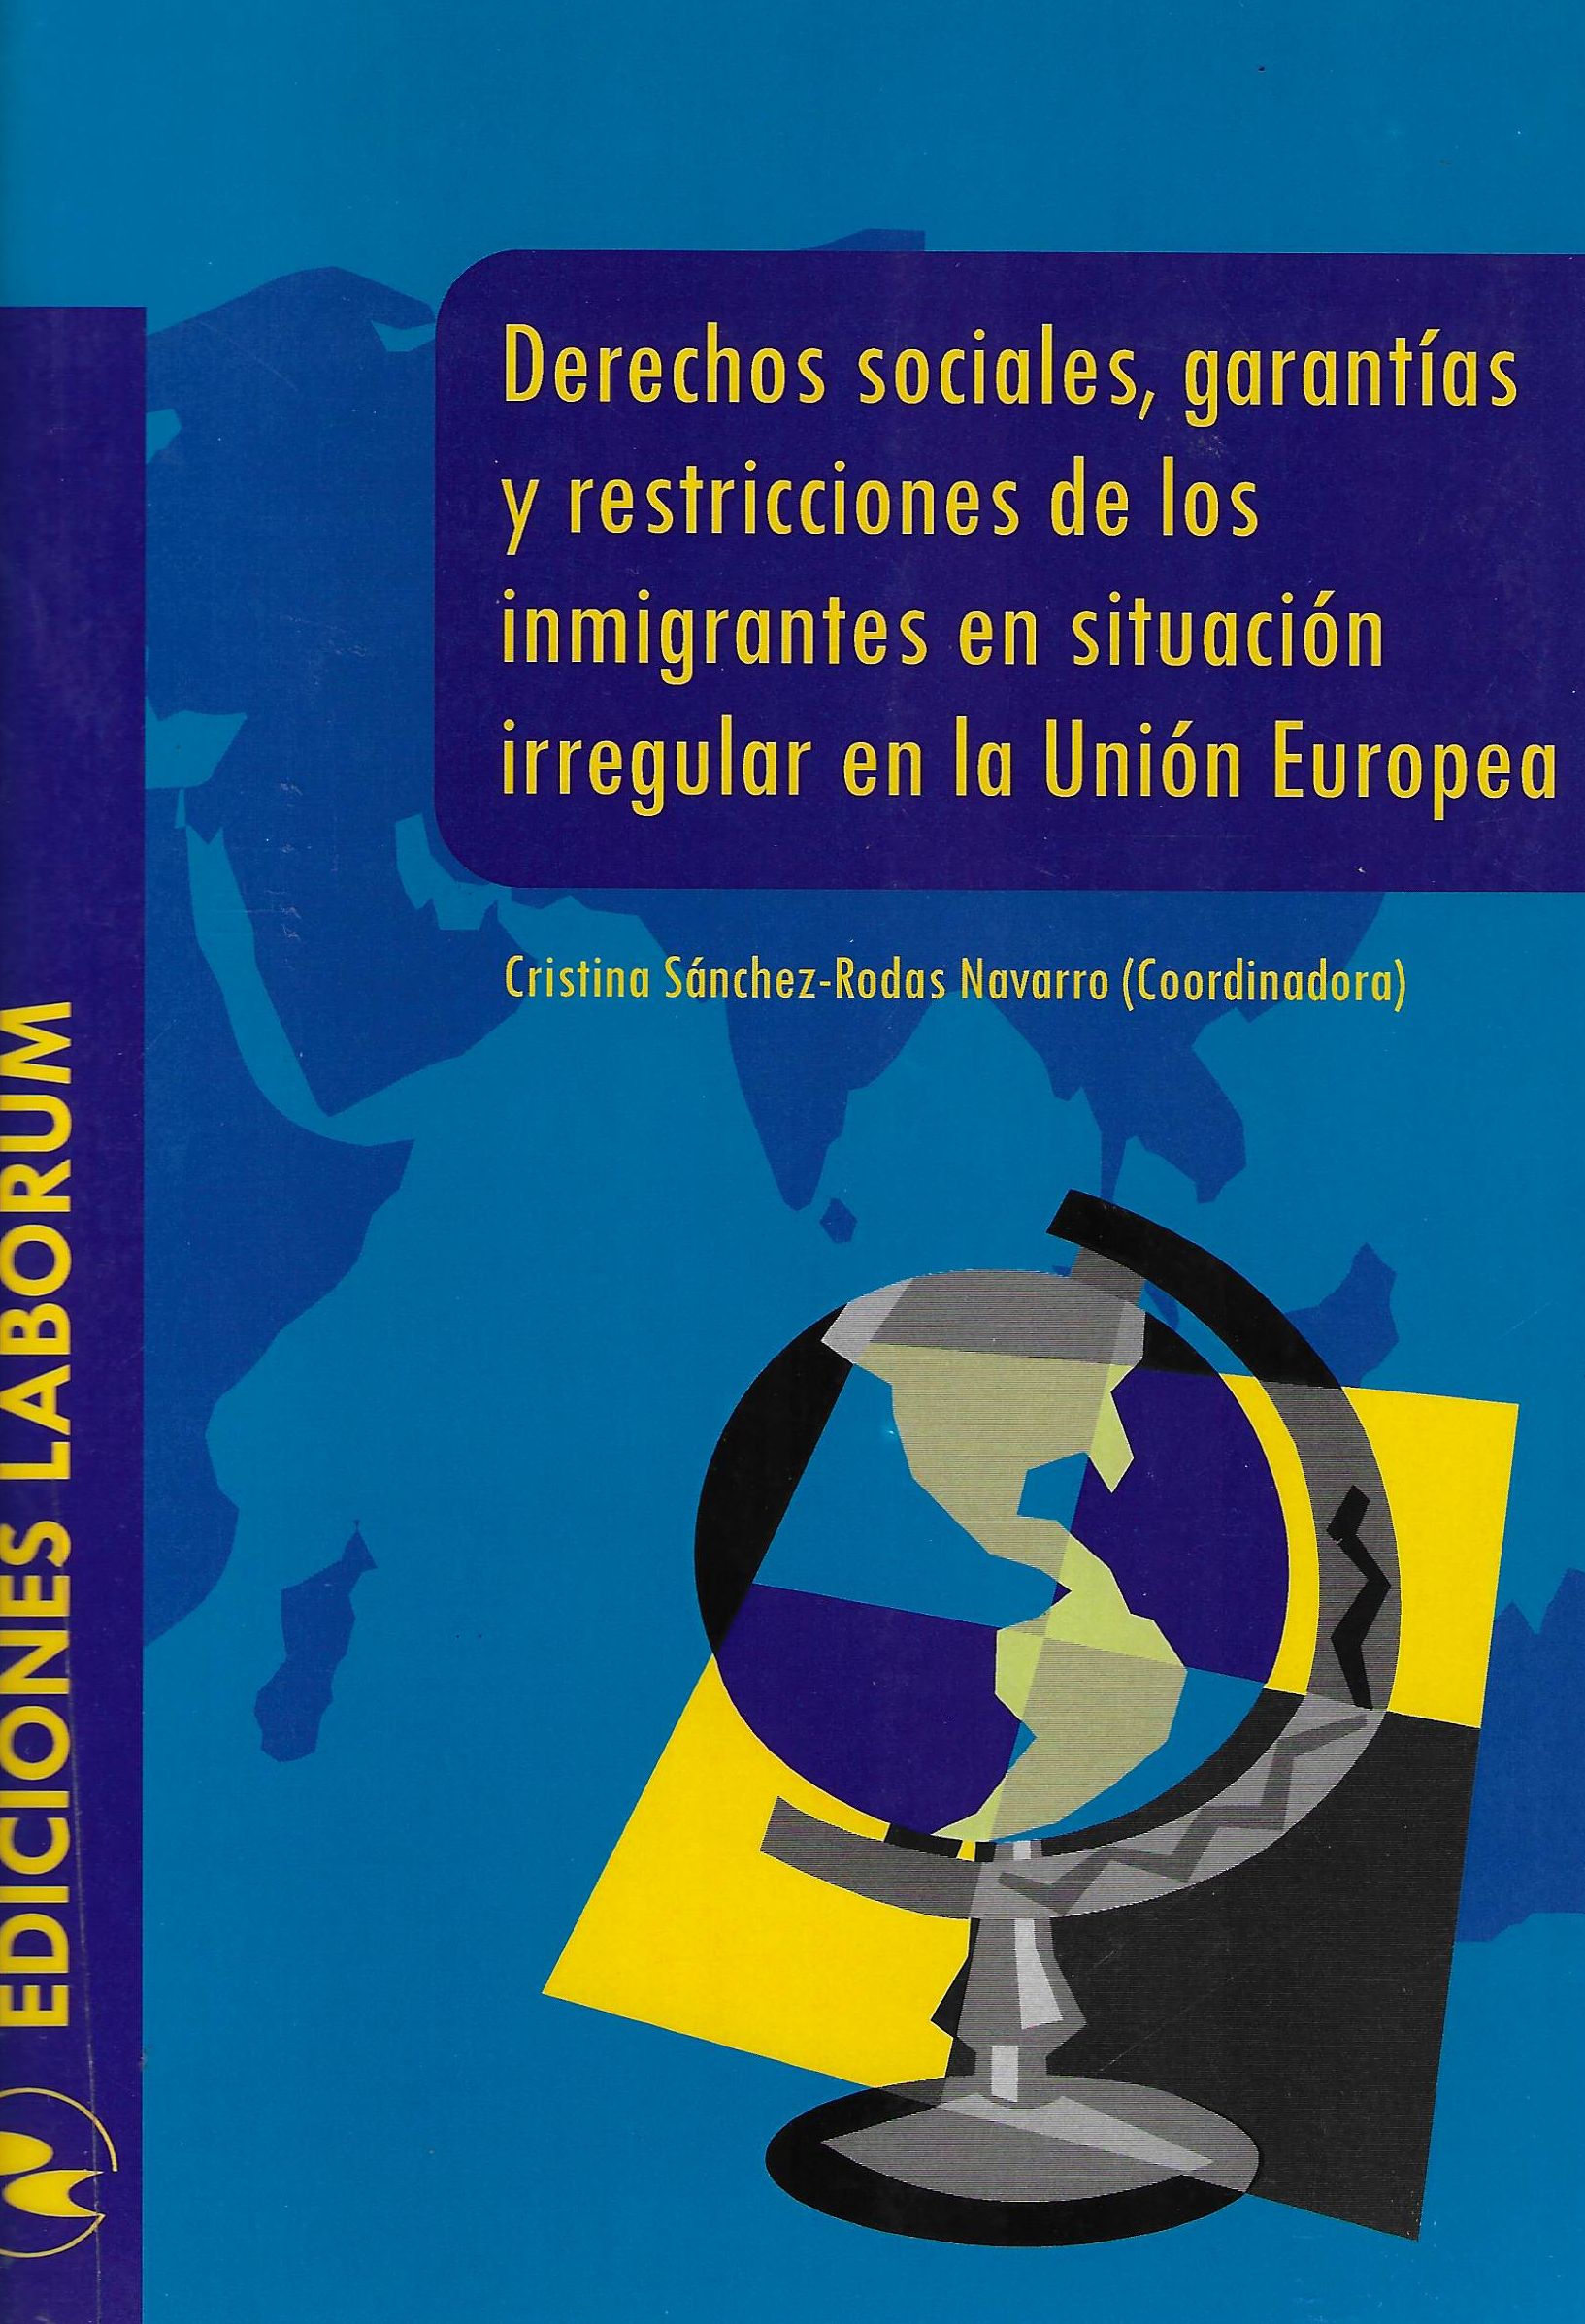 Imagen de portada del libro Derechos sociales, garantías y restricciones de los inmigrantes en situación irregular en la Unión Europea